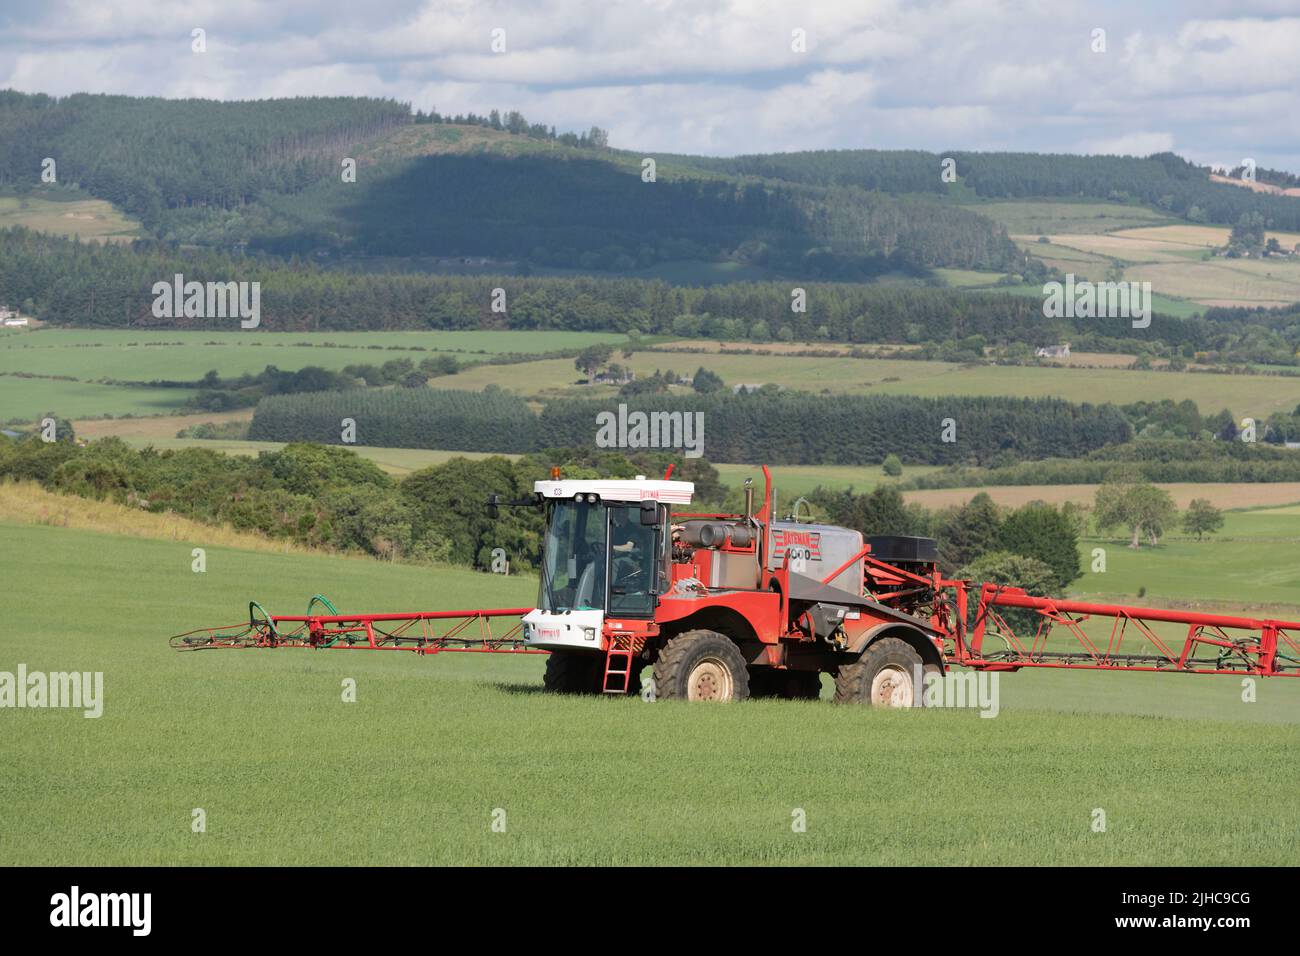 Ein Bateman-Sprüher, der Gerste auf einem Feld in Aberdeenshire sprühte und einen malerischen Blick auf die umliegende Landschaft bietet Stockfoto